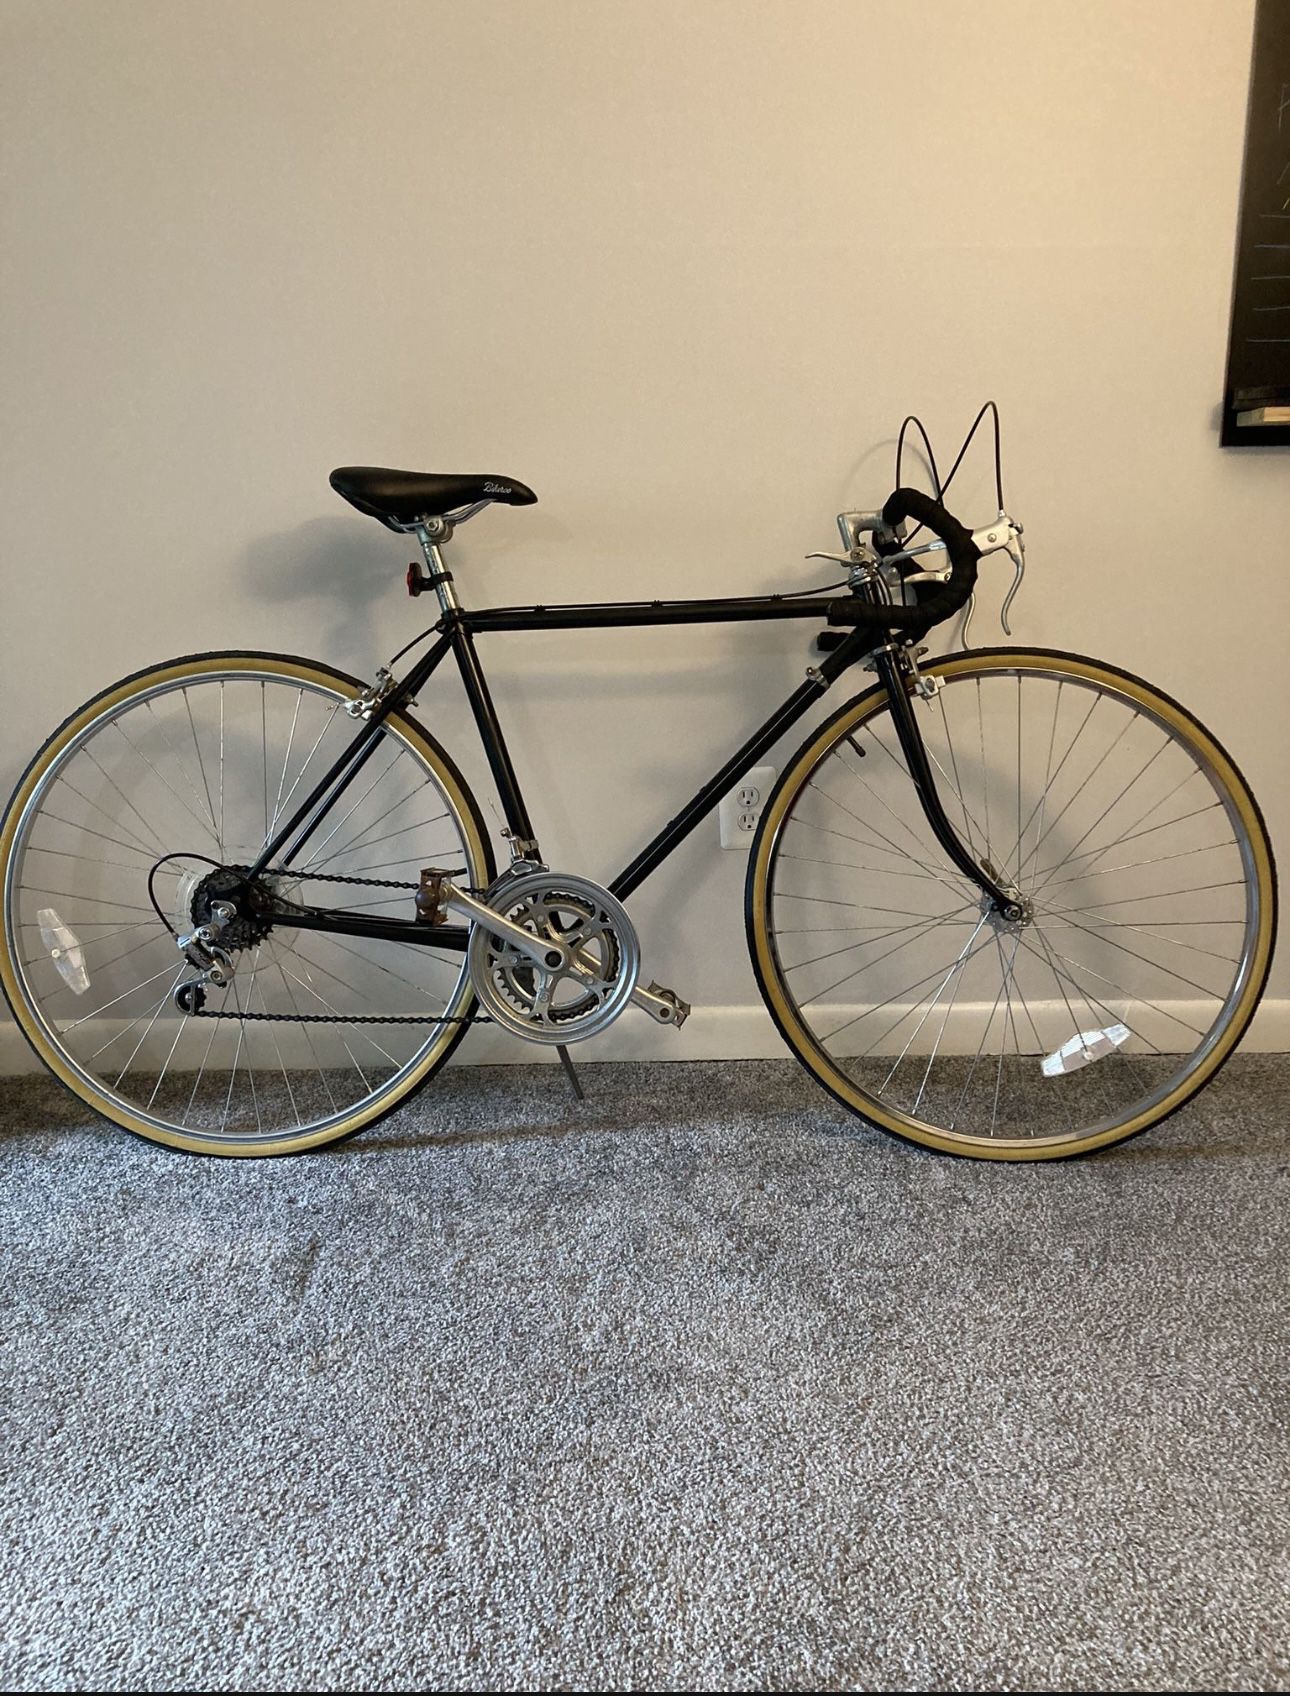 Steel frame Bicycle 